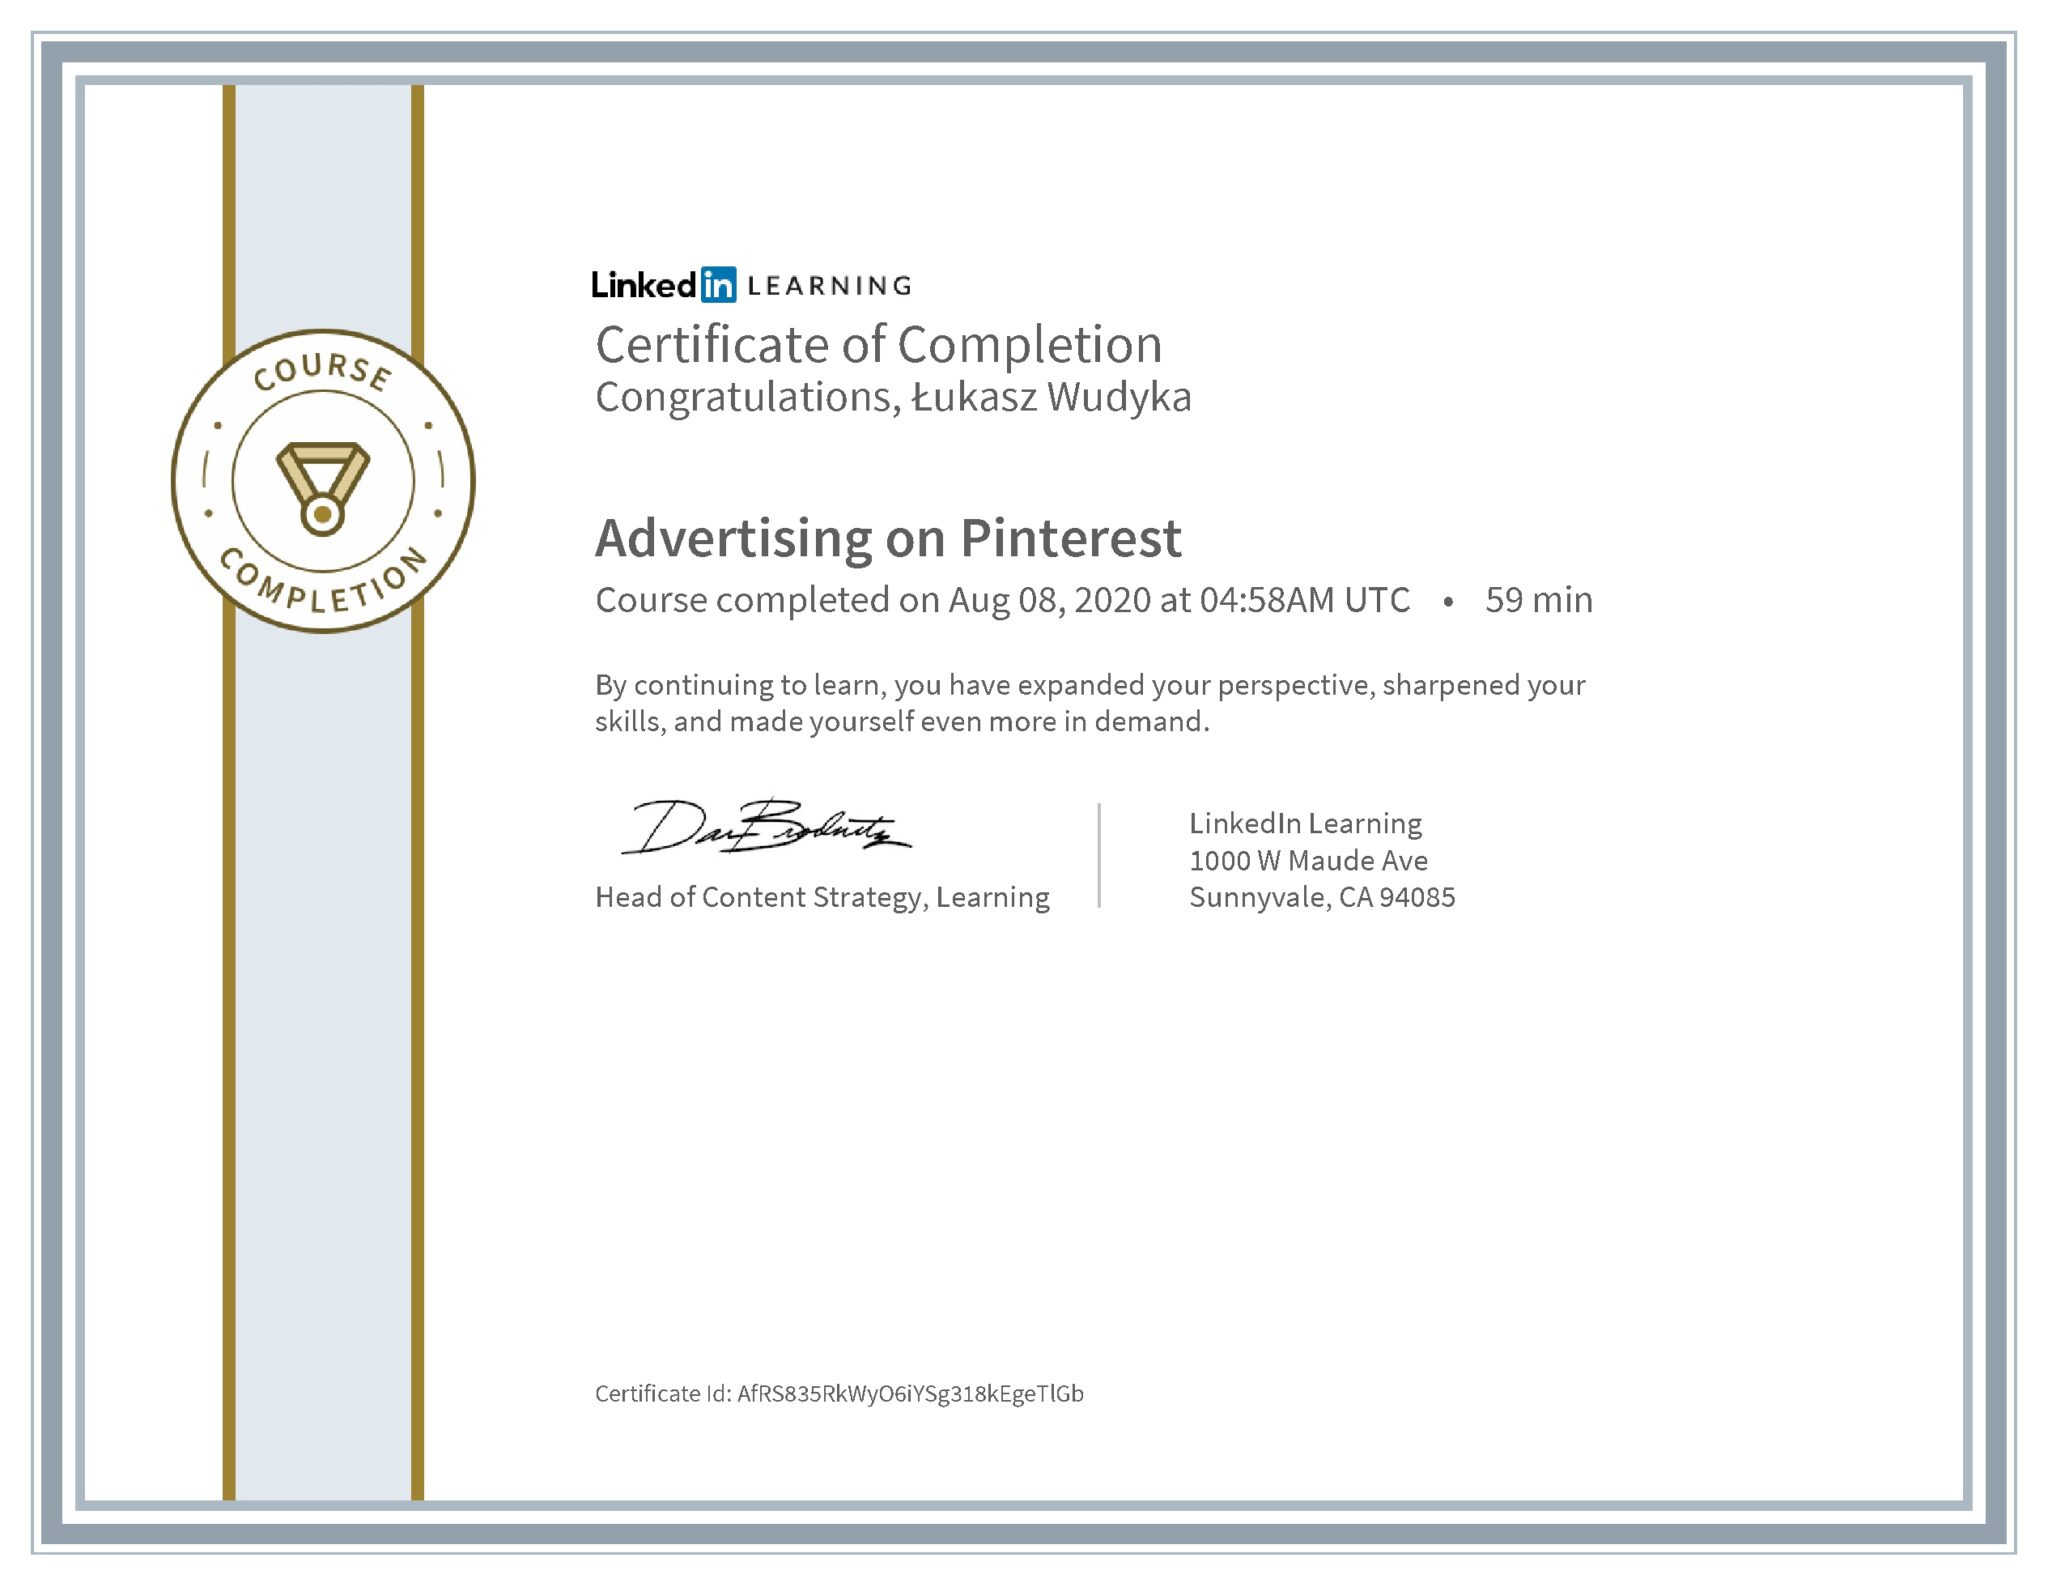 Łukasz Wudyka certyfikat LinkedIn Advertising on Pinterest